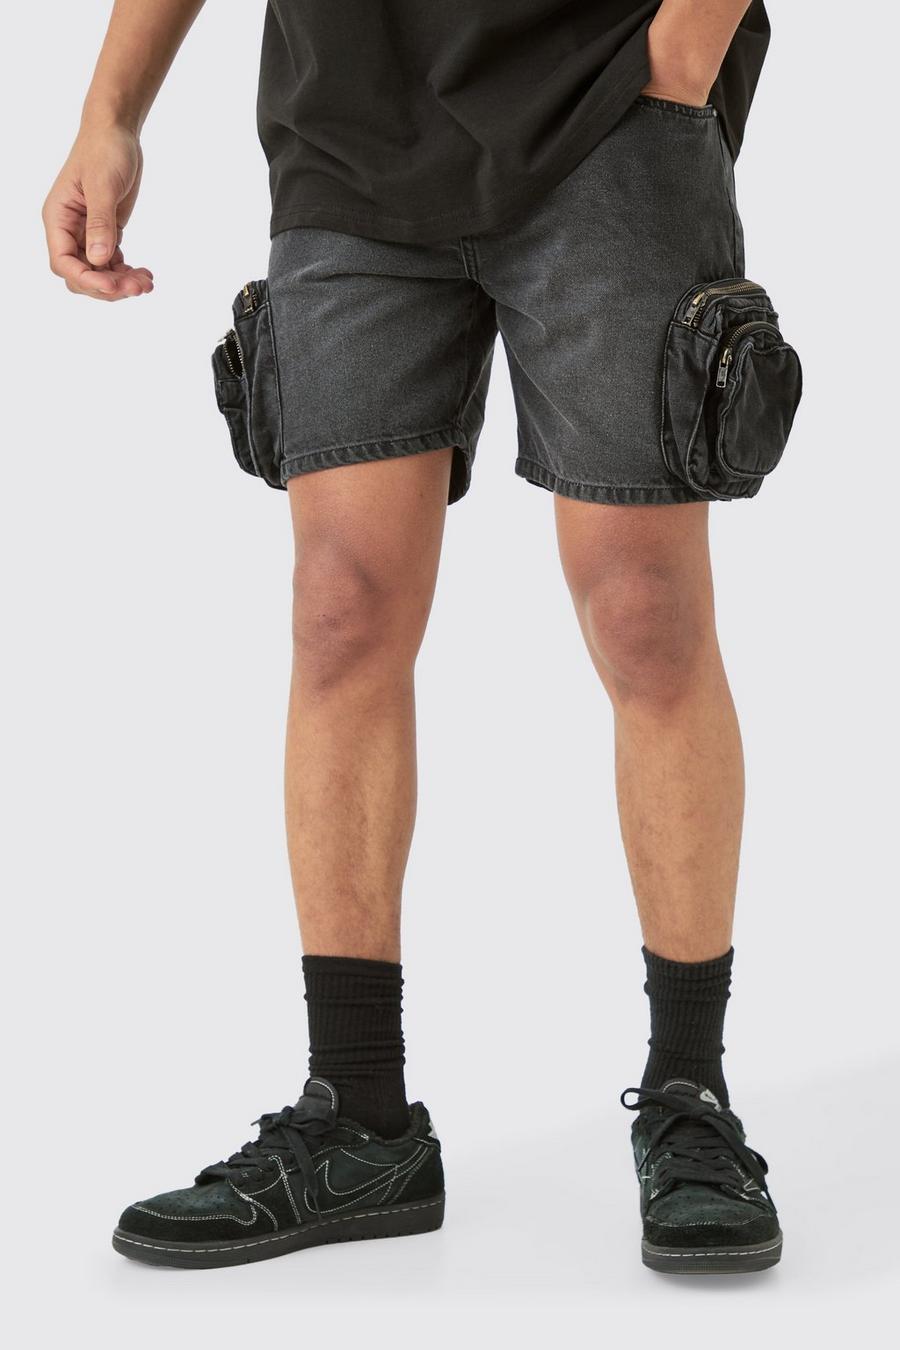 Pantalones cortos vaqueros ajustados con bolsillos cargo 3D en negro desteñido, Washed black image number 1